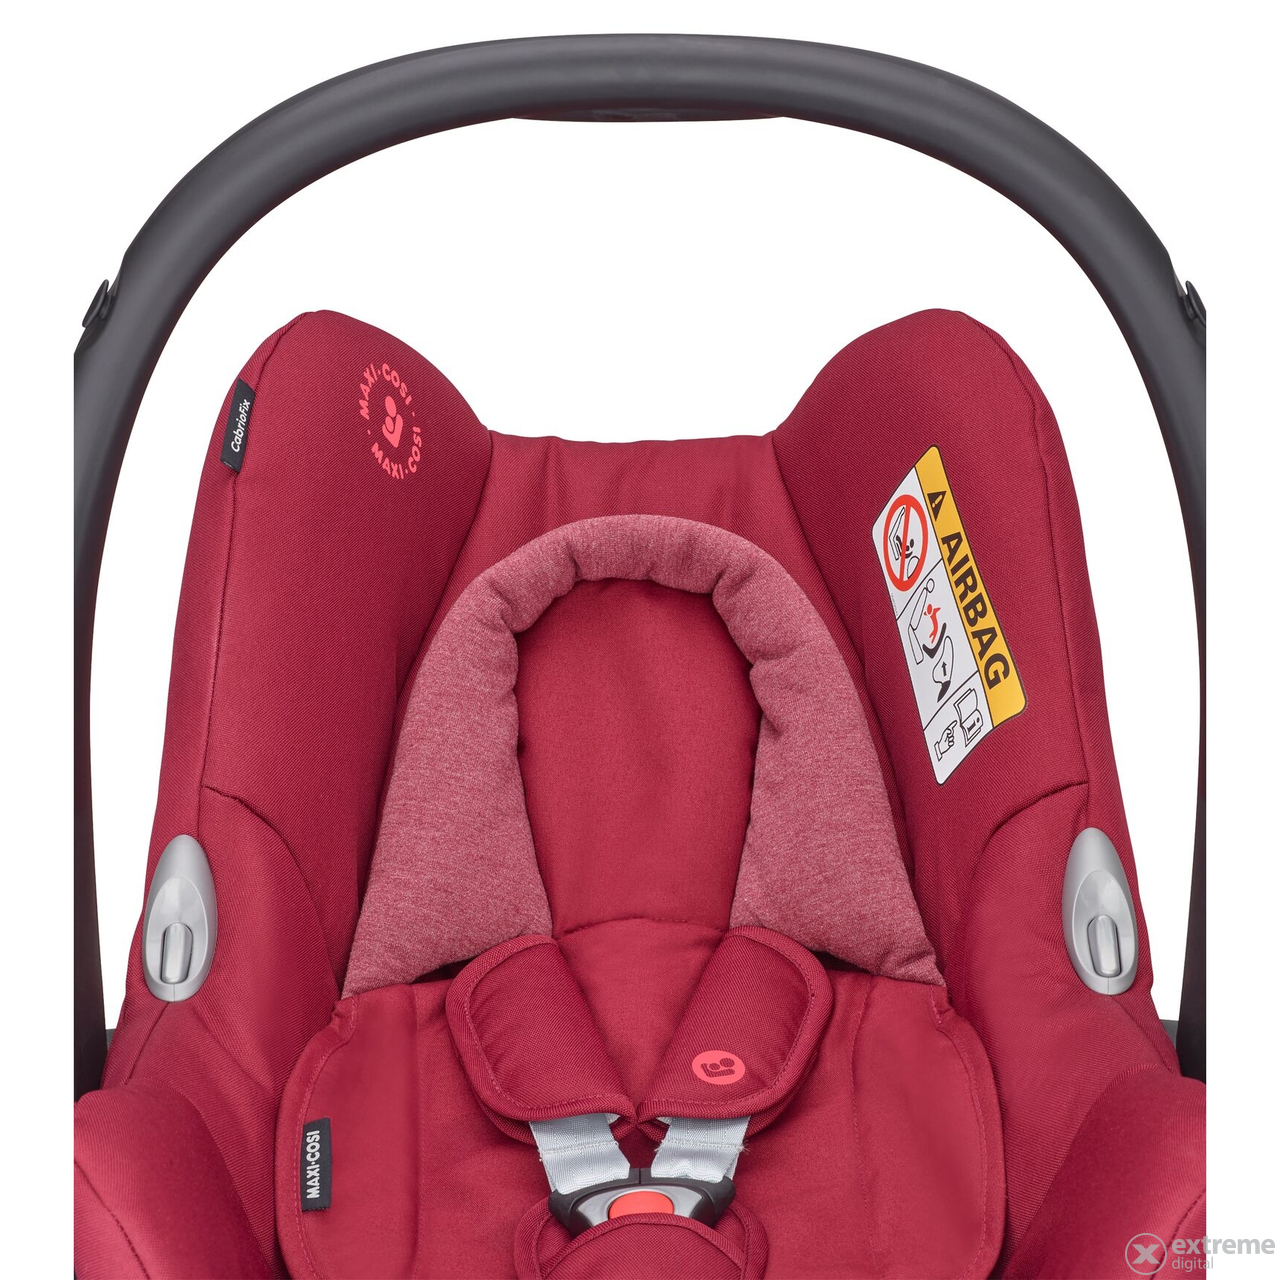 Maxi Cosi CabrioFix 0+  auto sjedalo za djecu, Essential Red